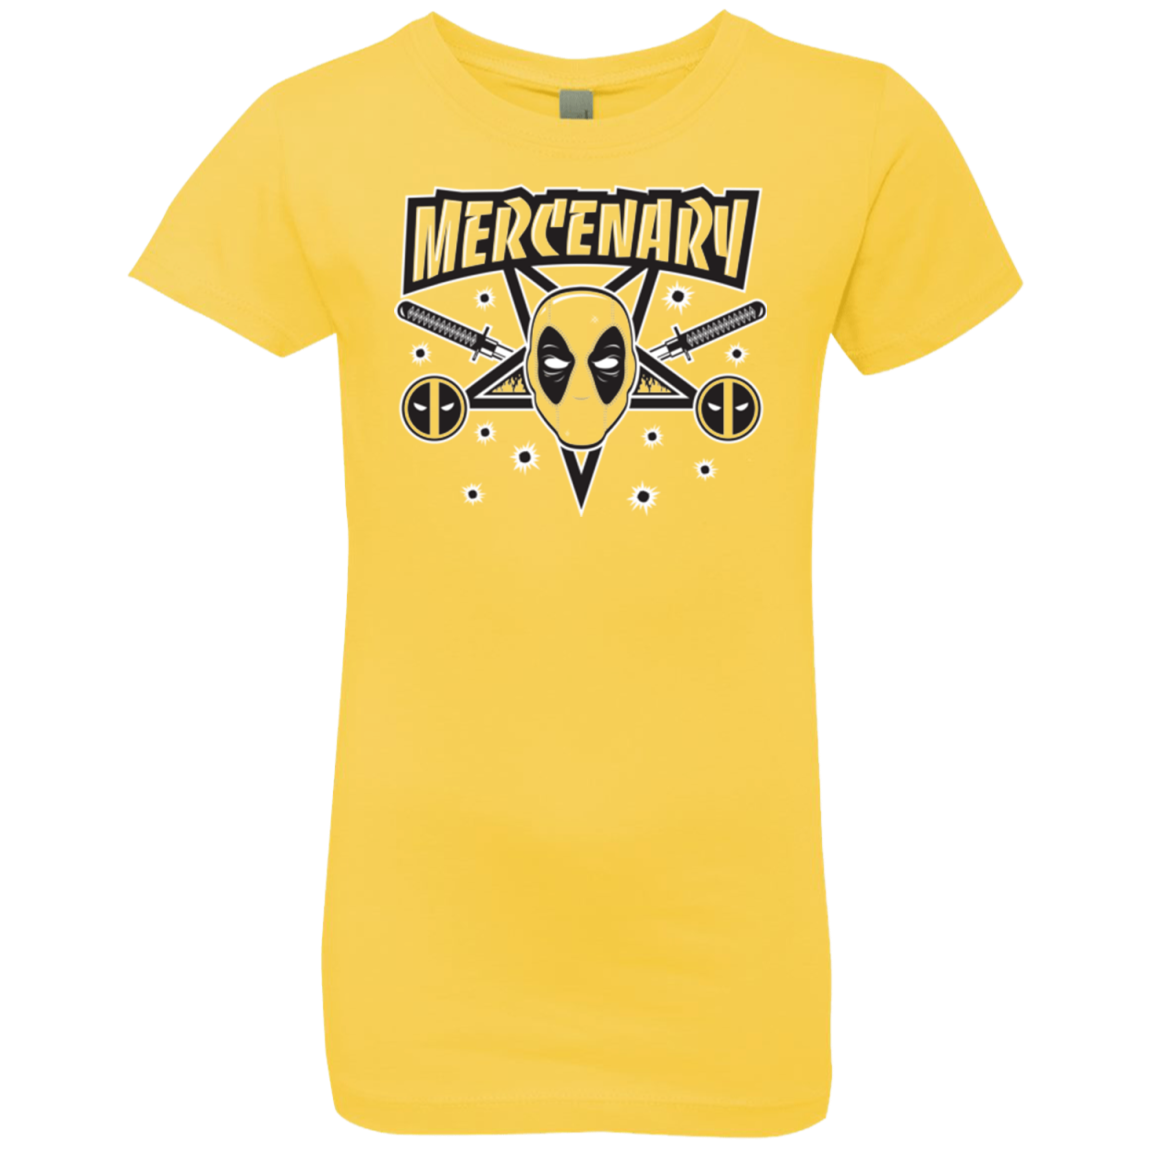 Mercenary (1) Girls Premium T-Shirt